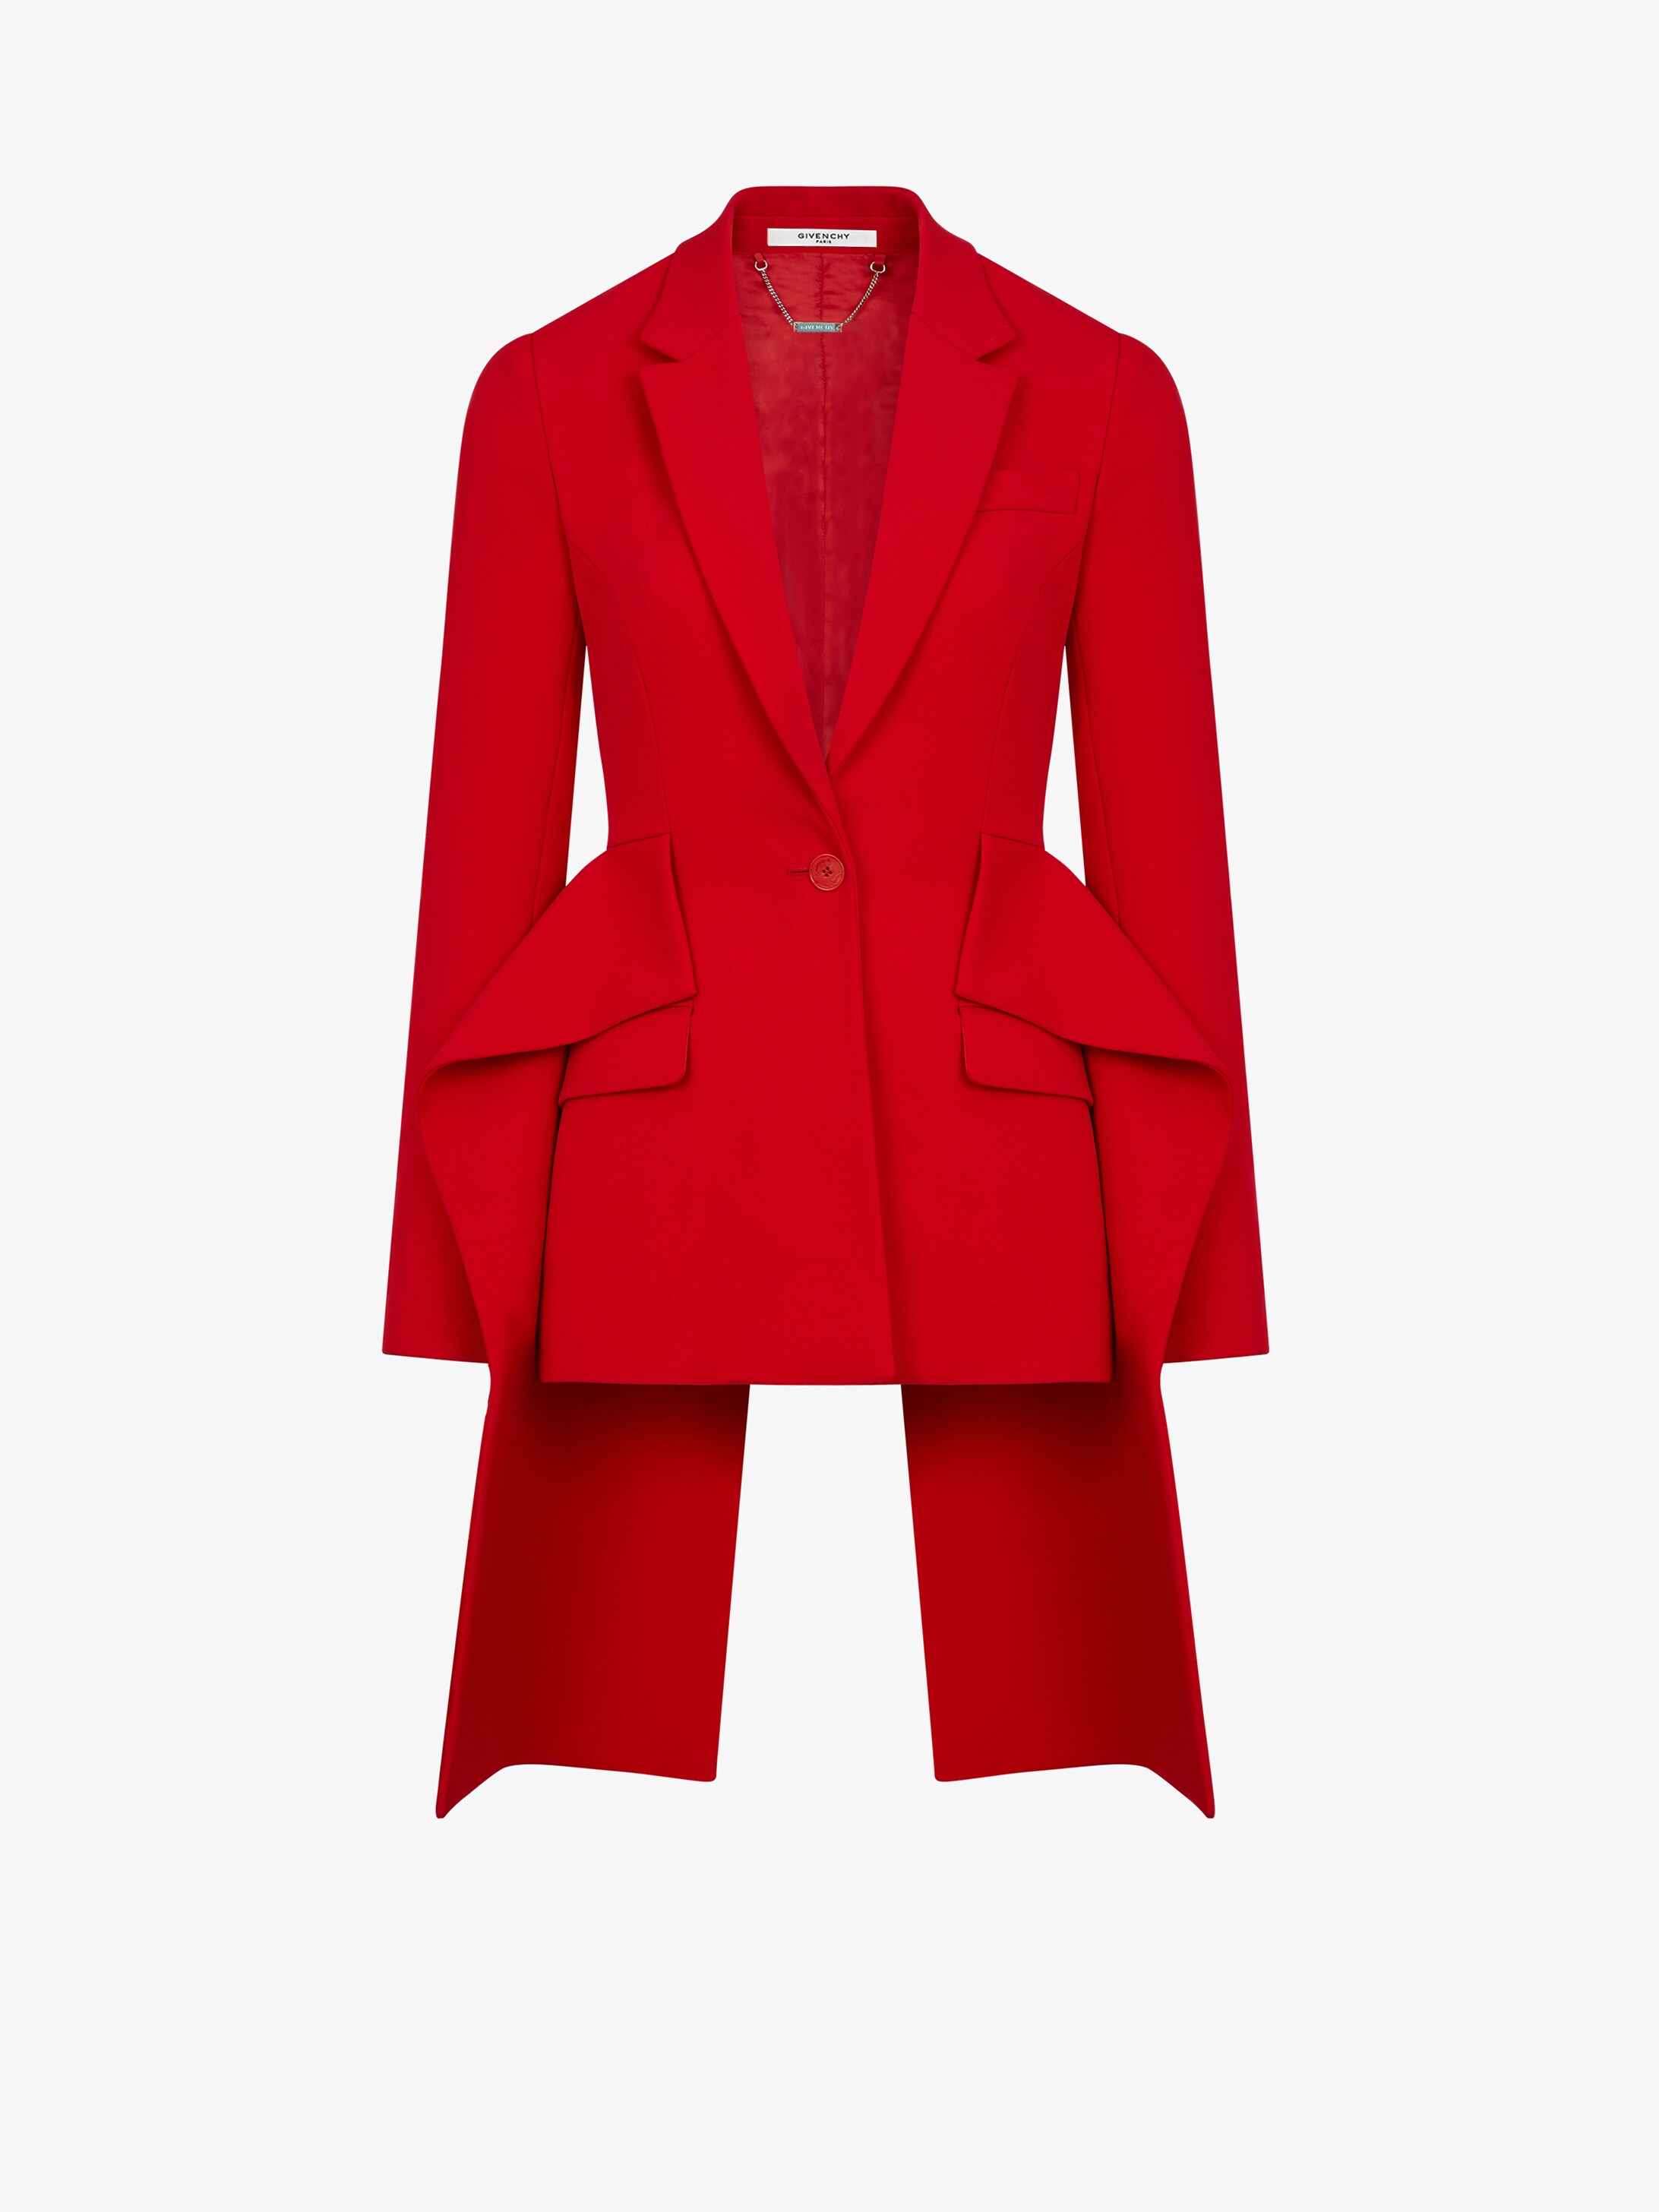 Givenchy Ruffled jacket | GIVENCHY Paris